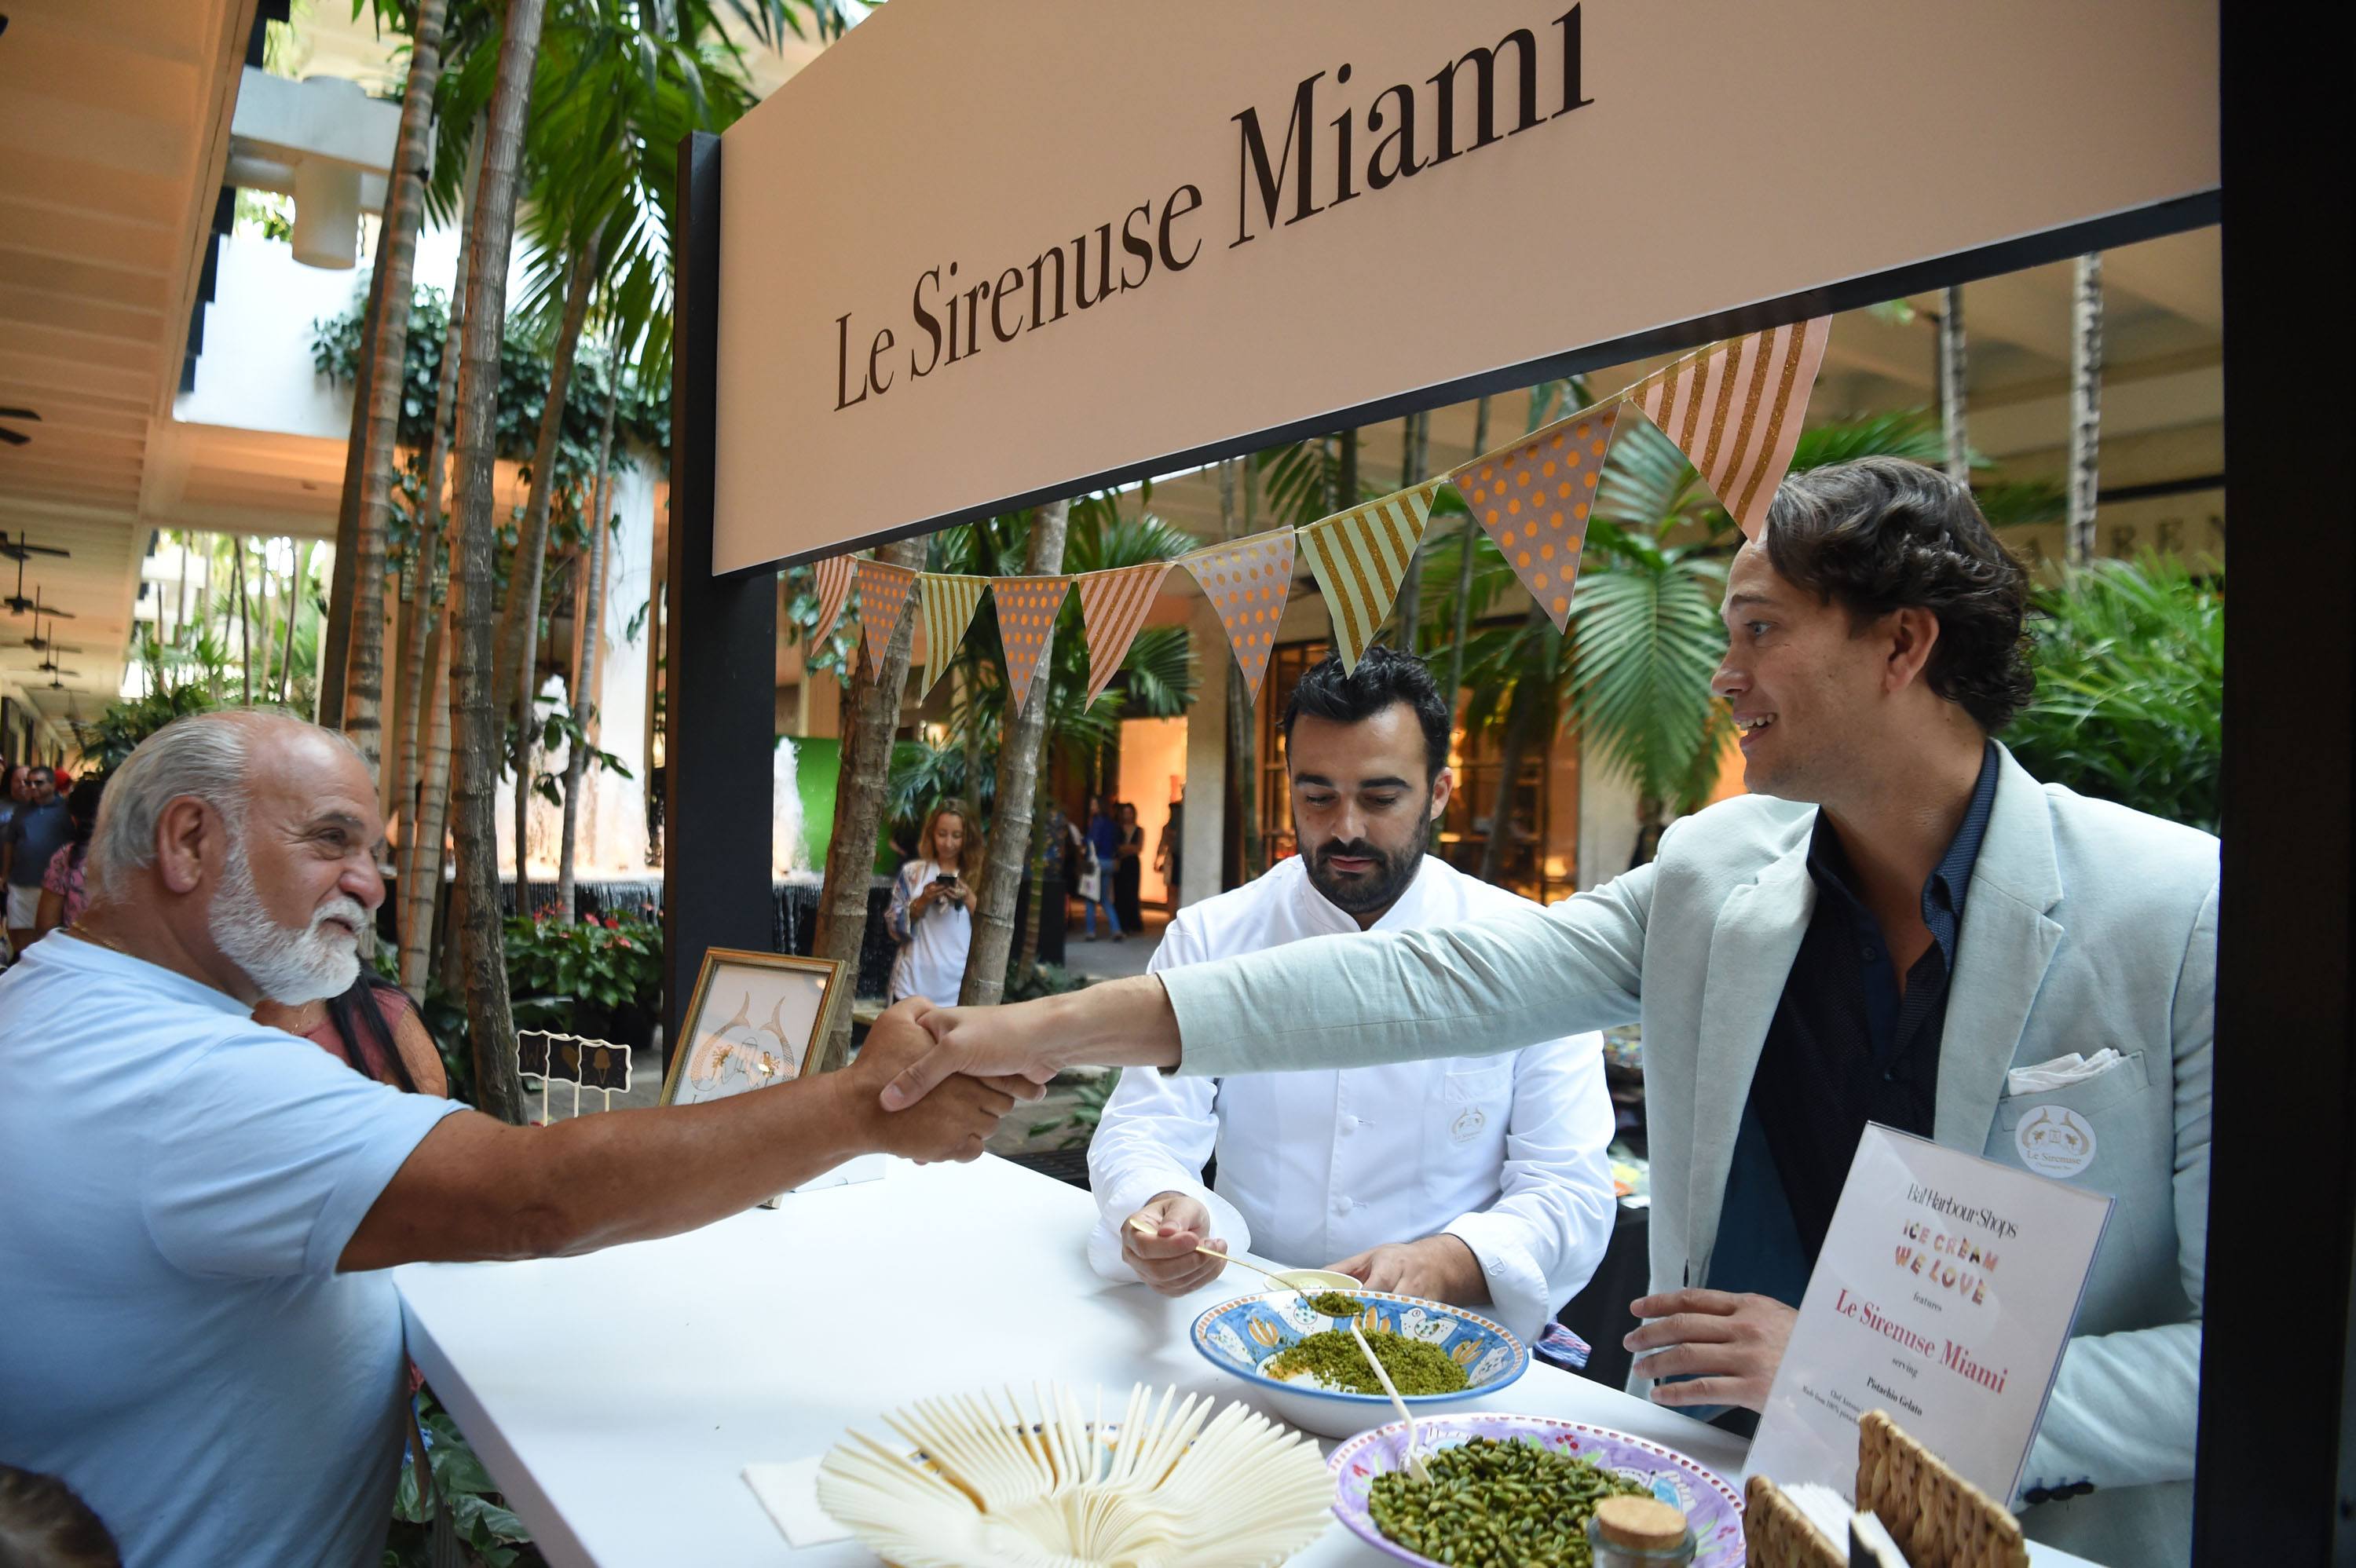 Le Sirenuse Miami served guests their signature Pistachio Gelato